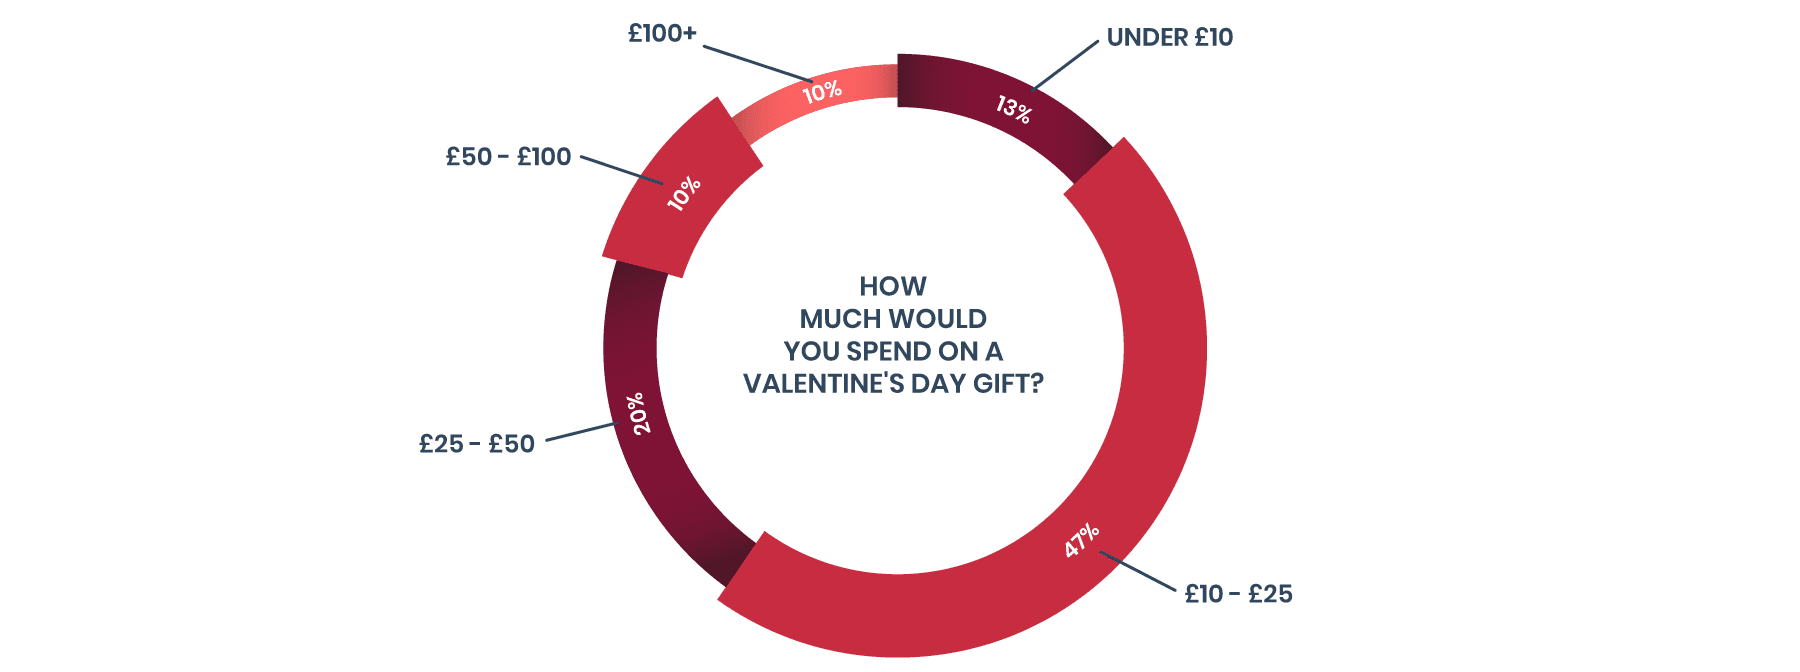 valentine's day budget